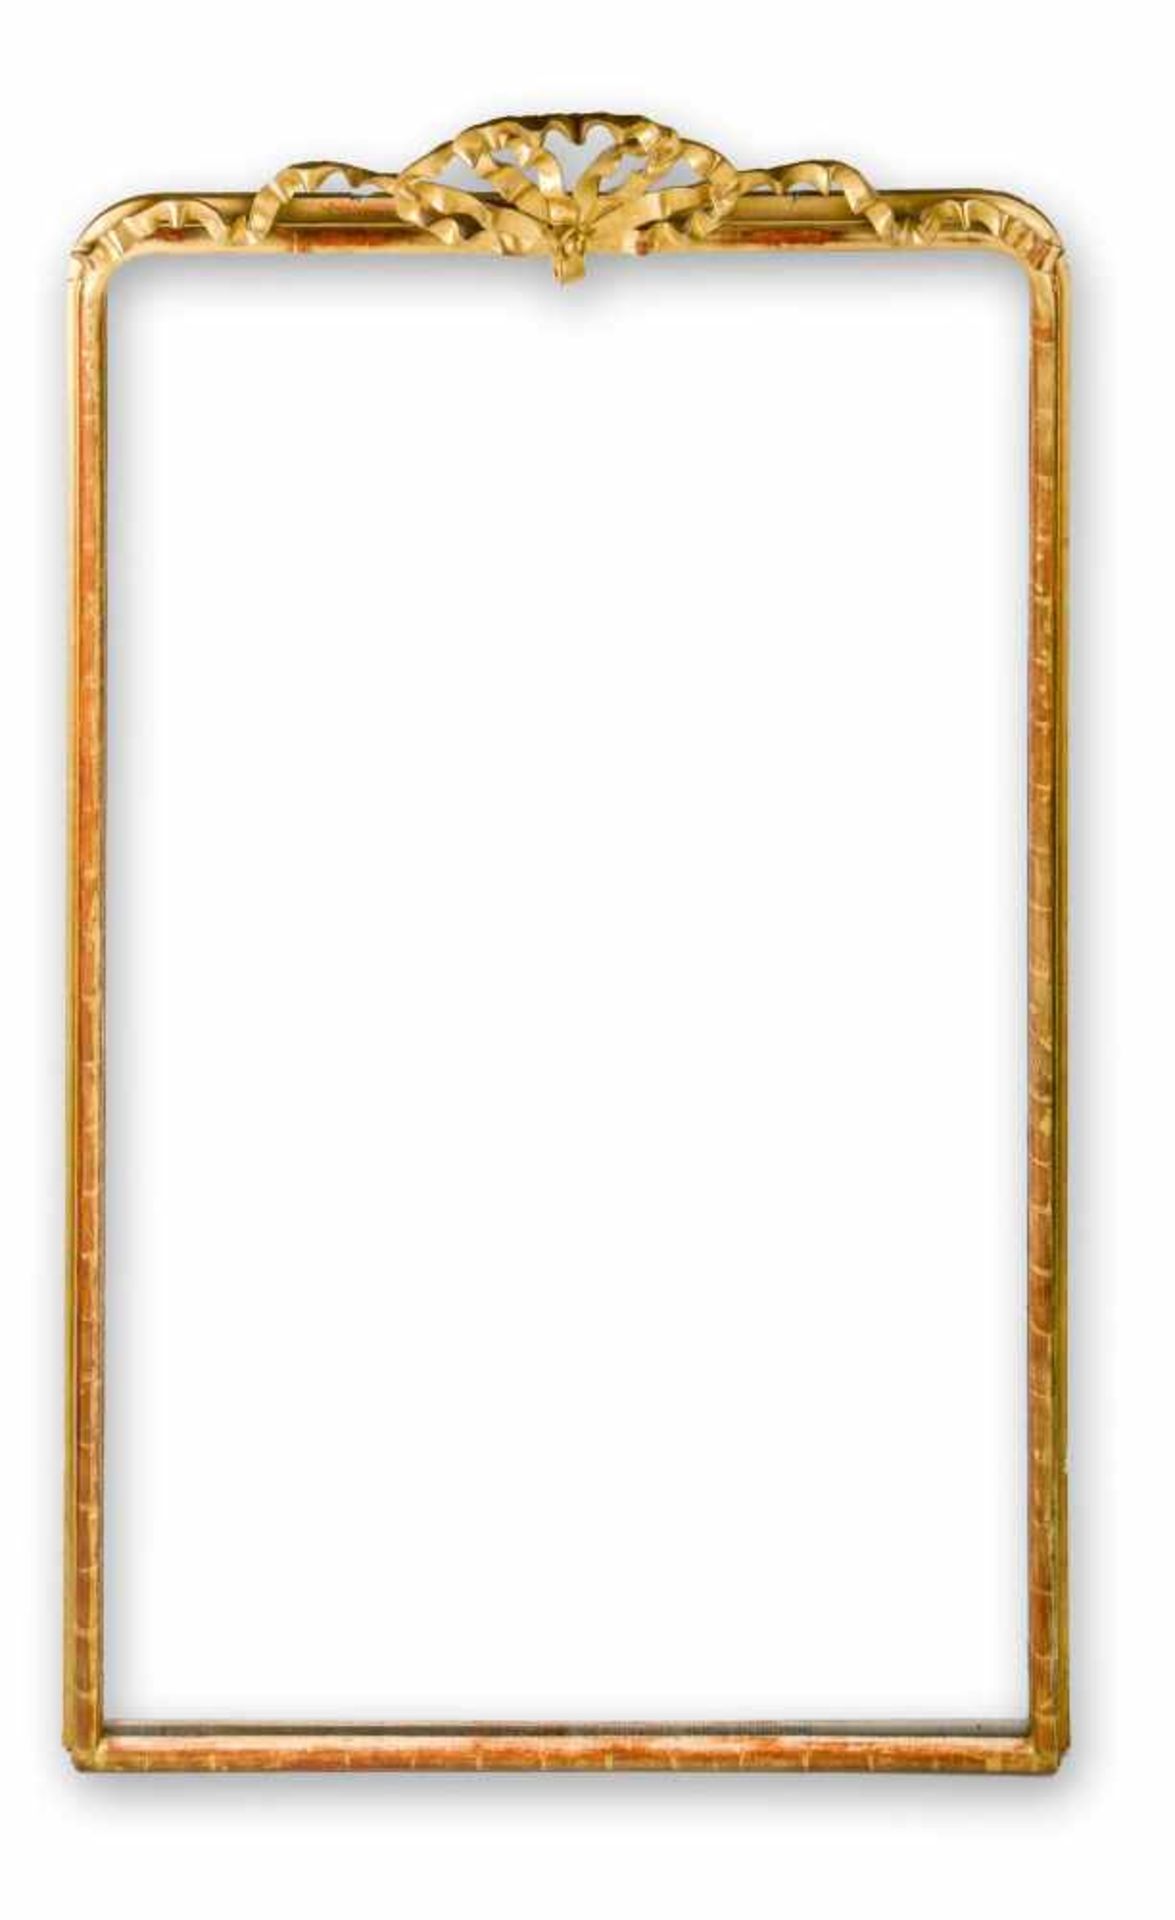 Großer SpiegelHolz und Stuck, vergoldet. Rechteckform mit oben gerundeten Ecken. Vorgewölbte